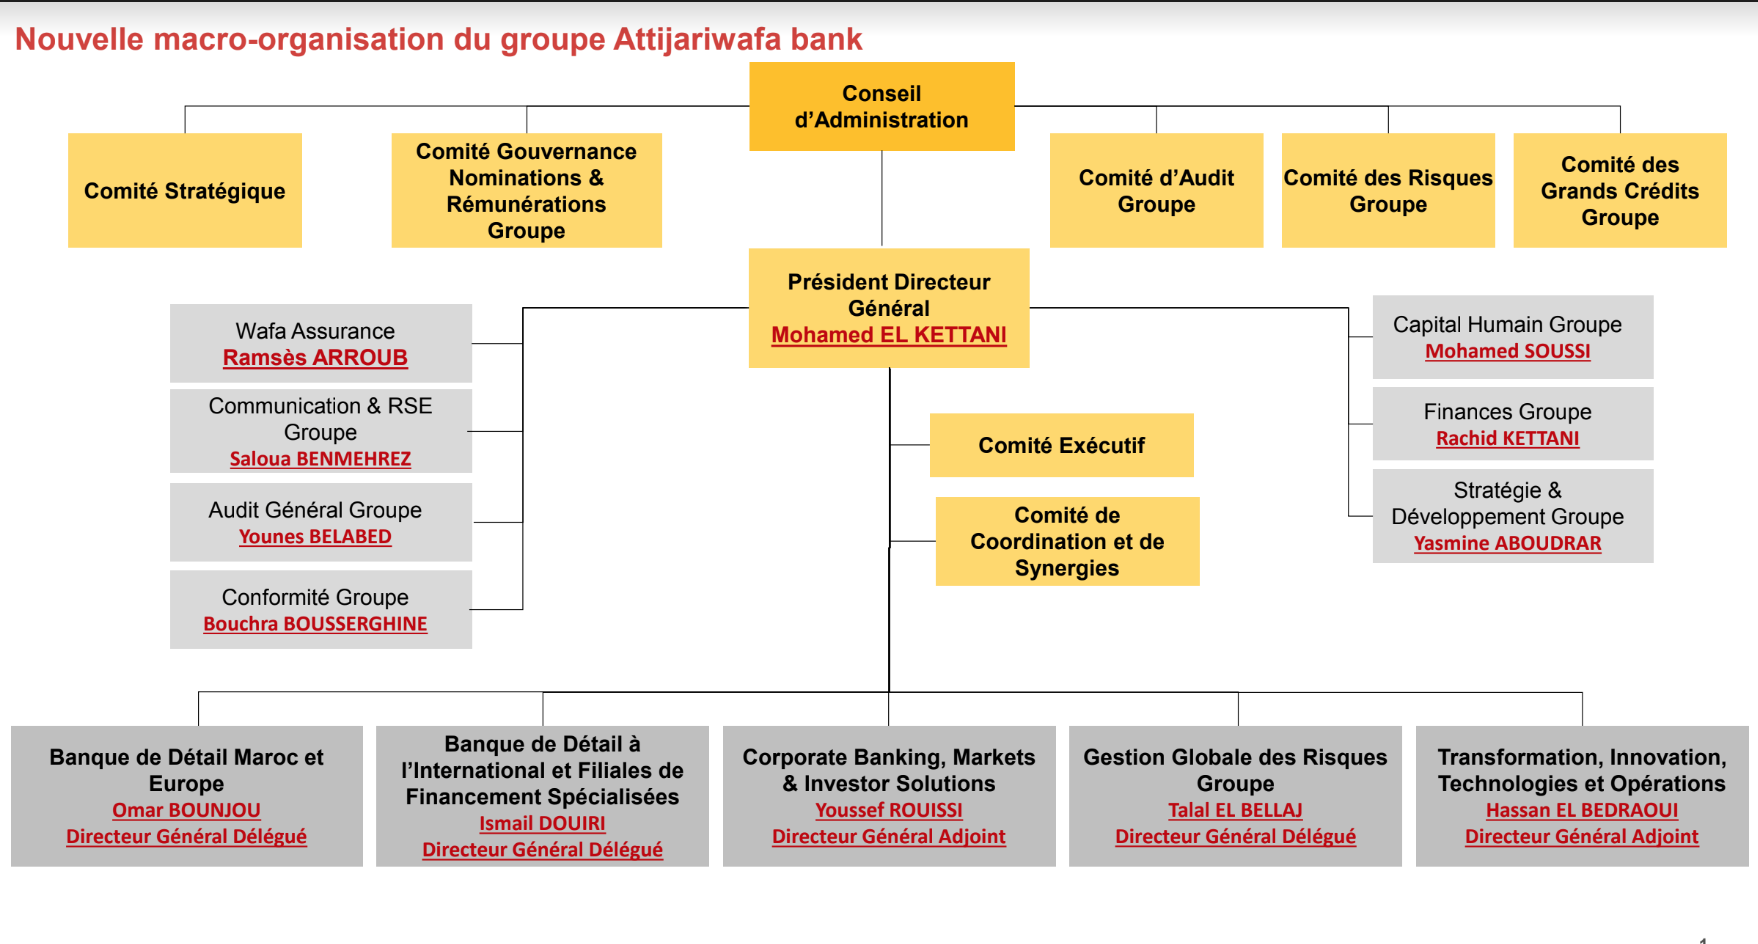 Une nouvelle macro-organisation pour le groupe Attijariwafa bank